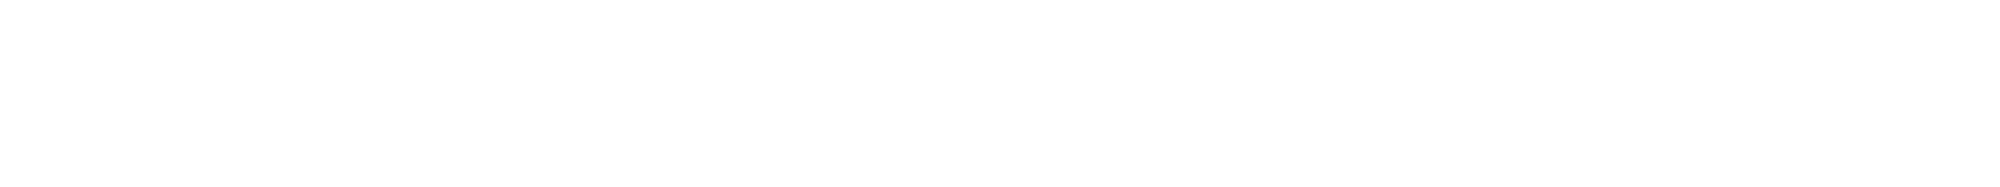 HIT Hafen- und Industrietechnik GmbH